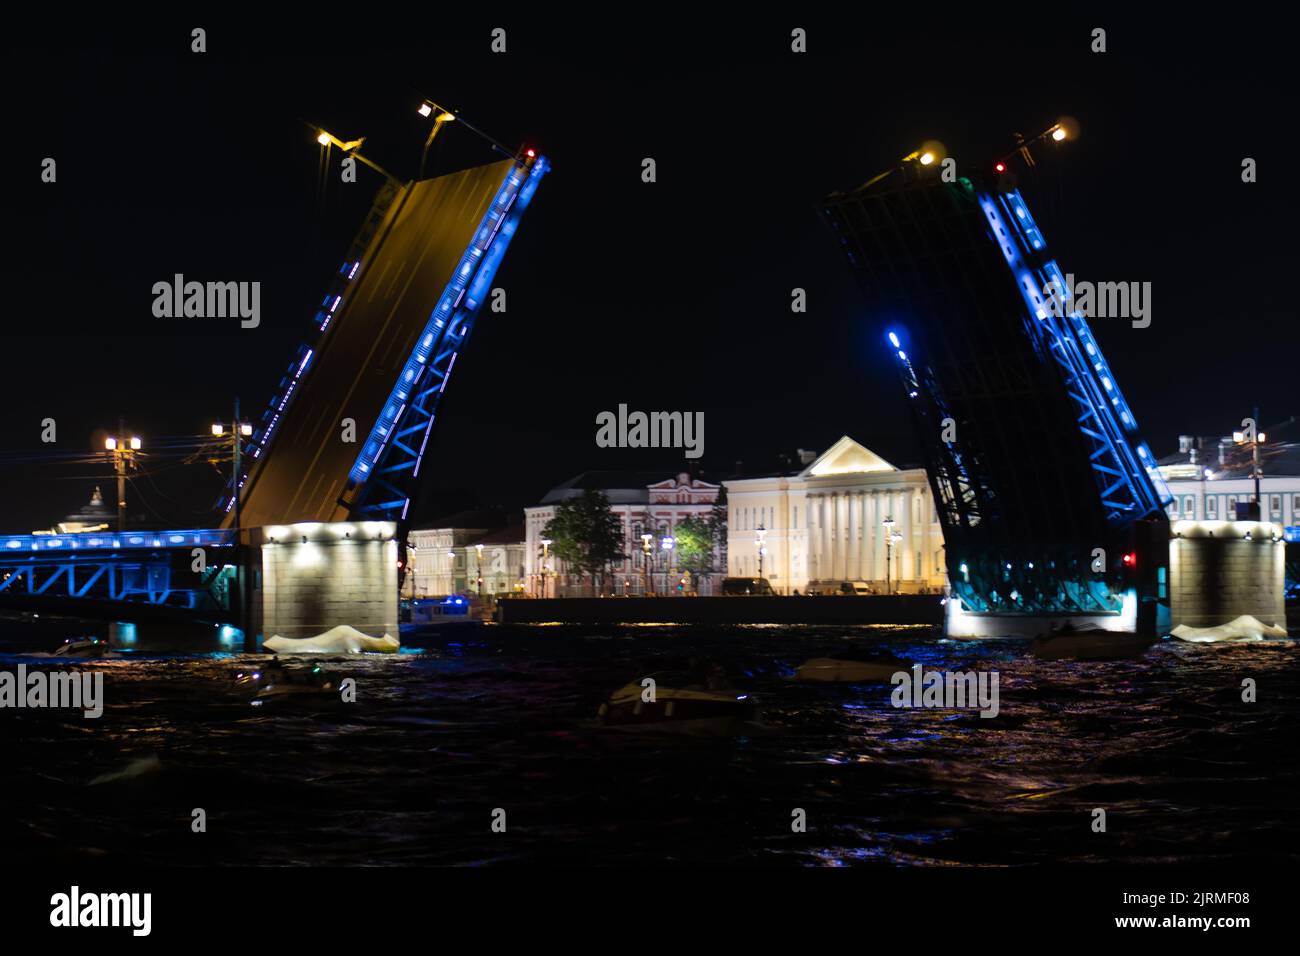 RUSSIE, PETERSBOURG - 19 AOÛT 2022: Pont Saint-pétersbourg de nuit forteresse neva russie peter St, de l'eau été en vue et du tourisme saint, Voyage Banque D'Images